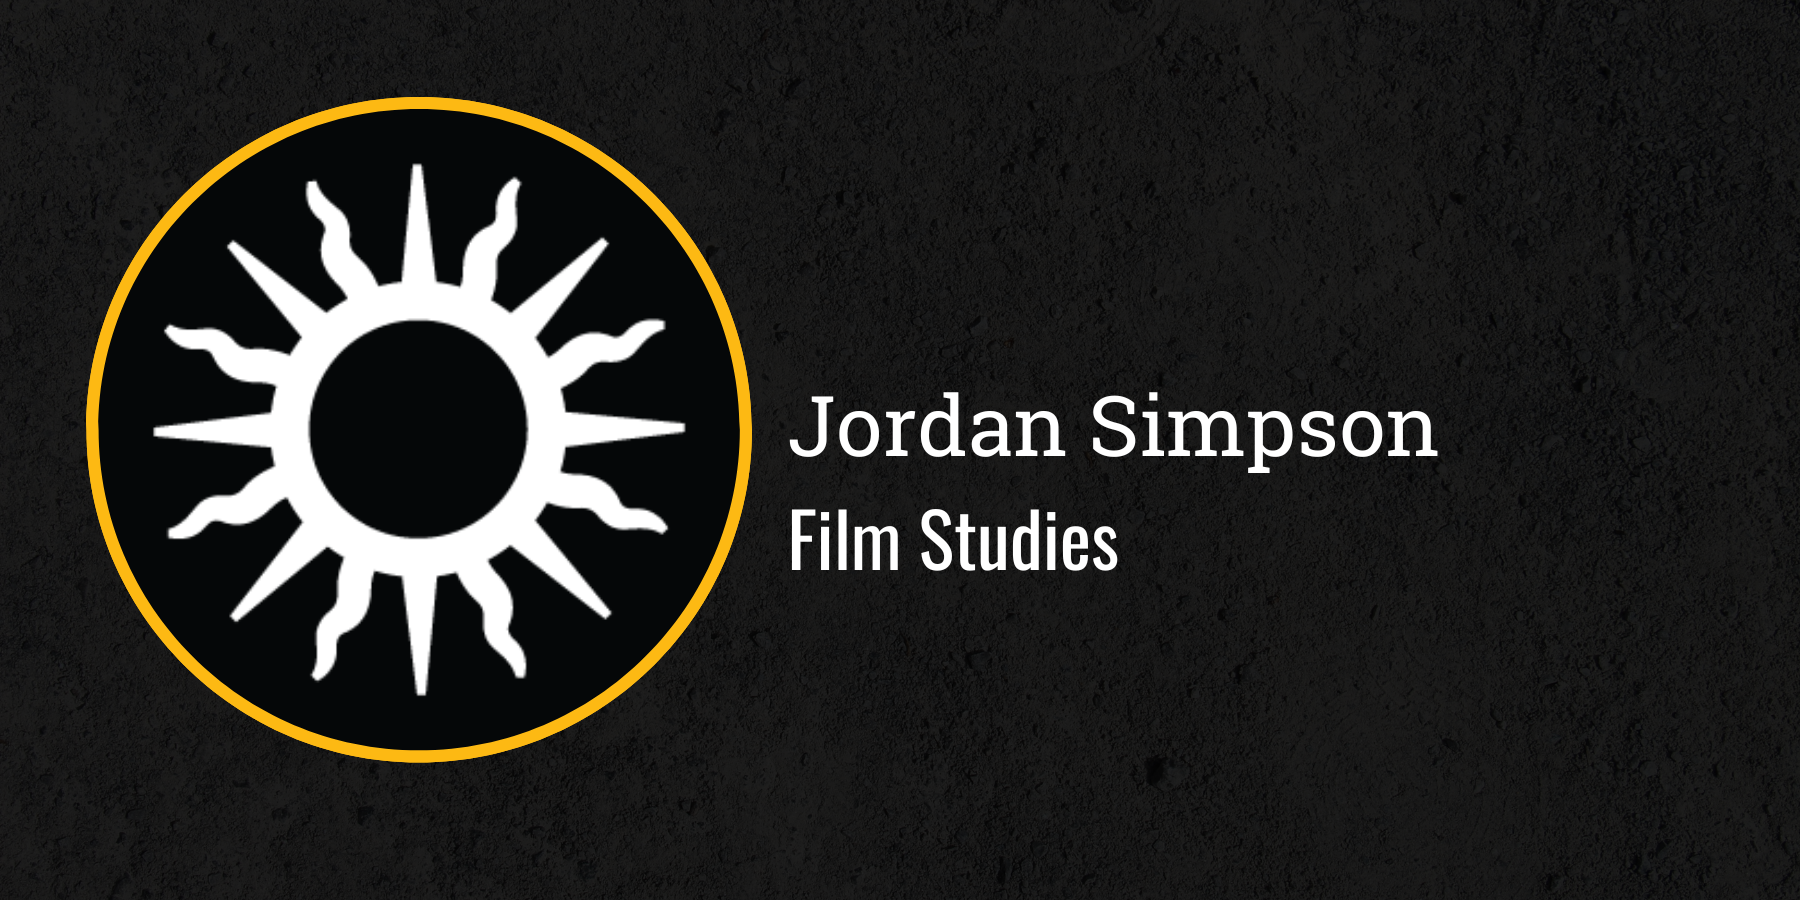 Jordan Simpson
Film Studies
